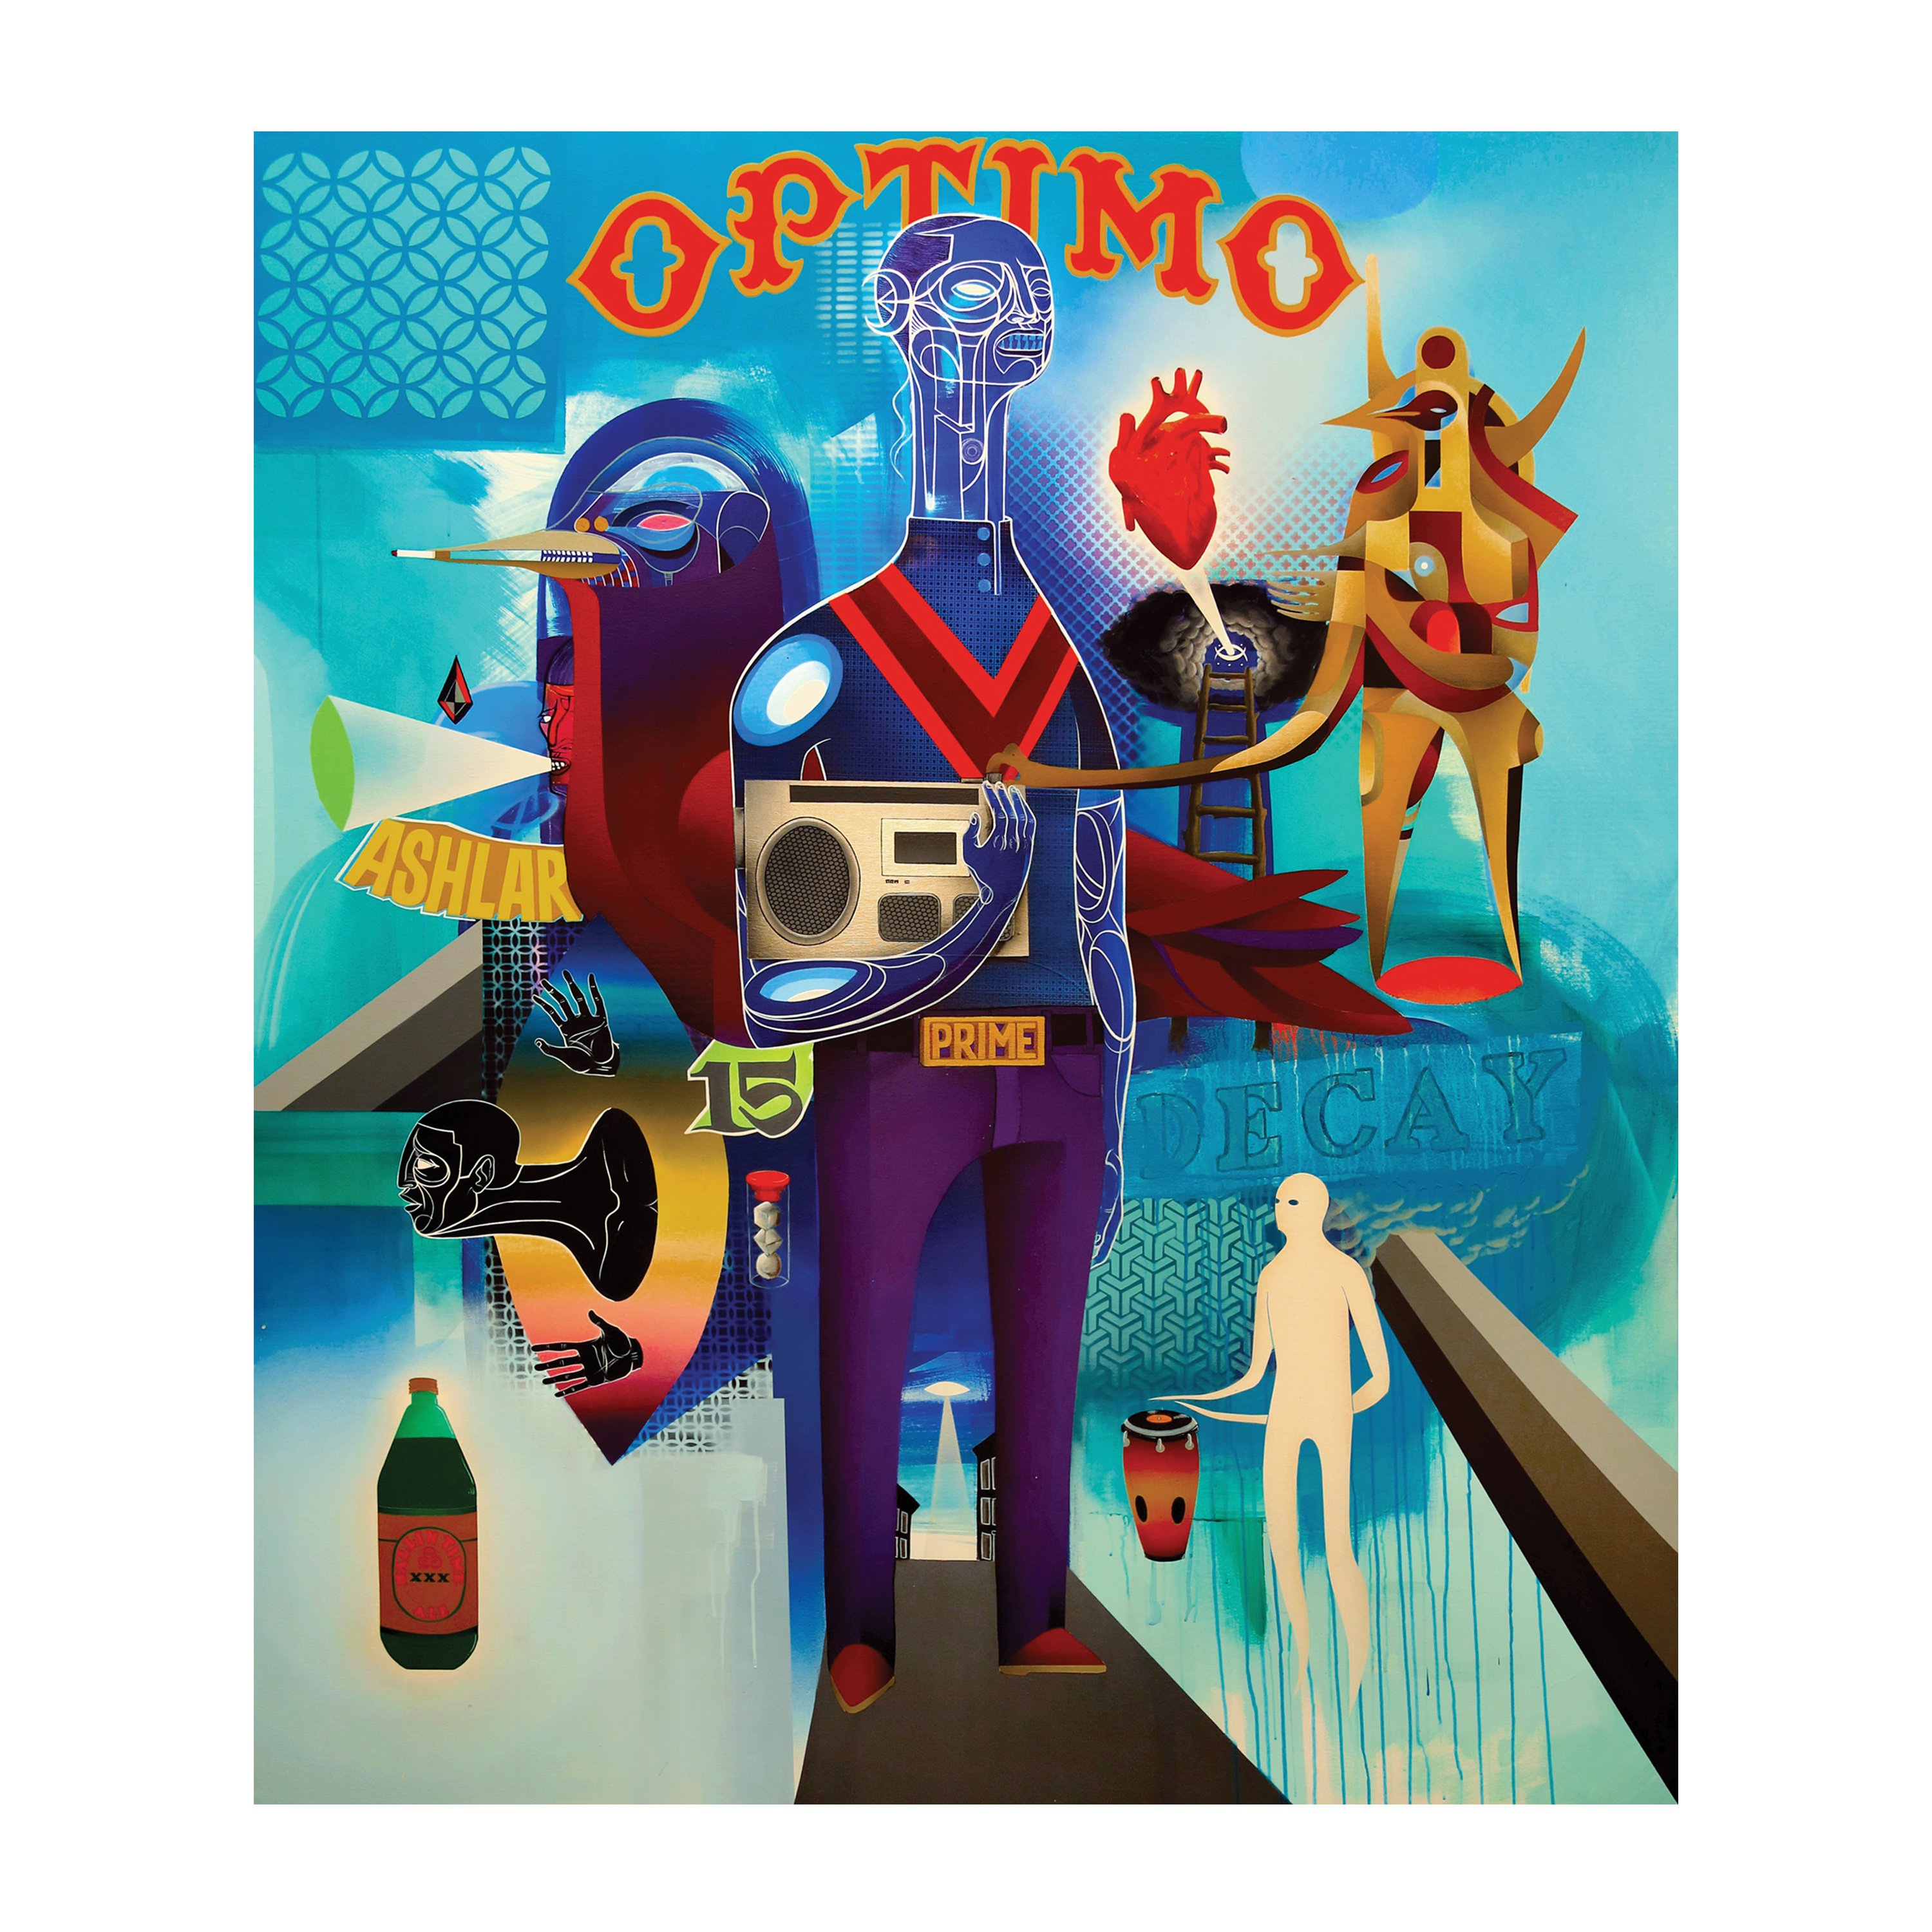 OPTIMO Acrylic and spray on canvas 2015, 70” x 60”